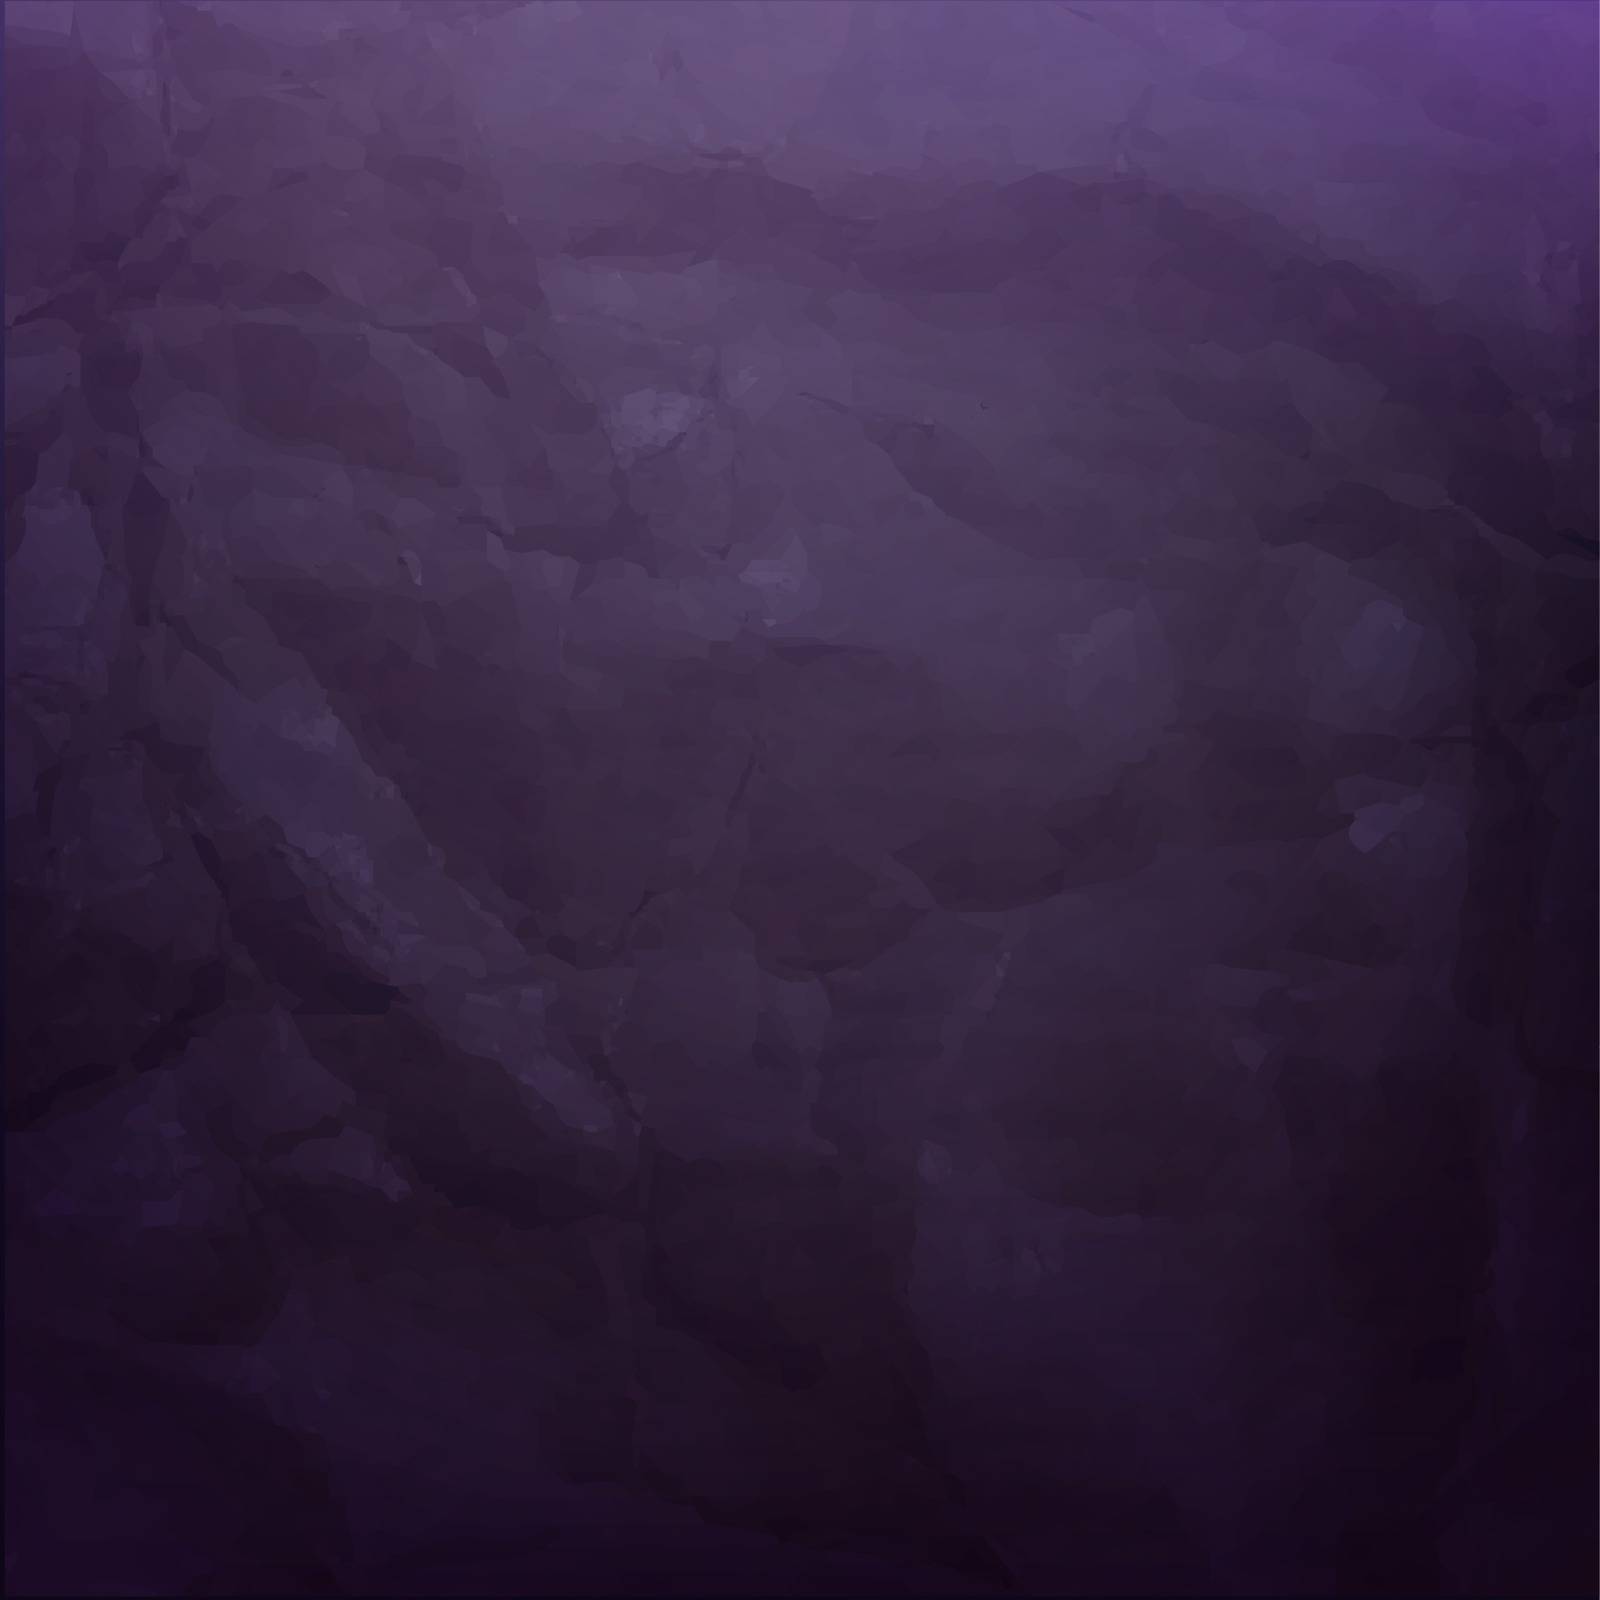 Dark Violet Background by cammep